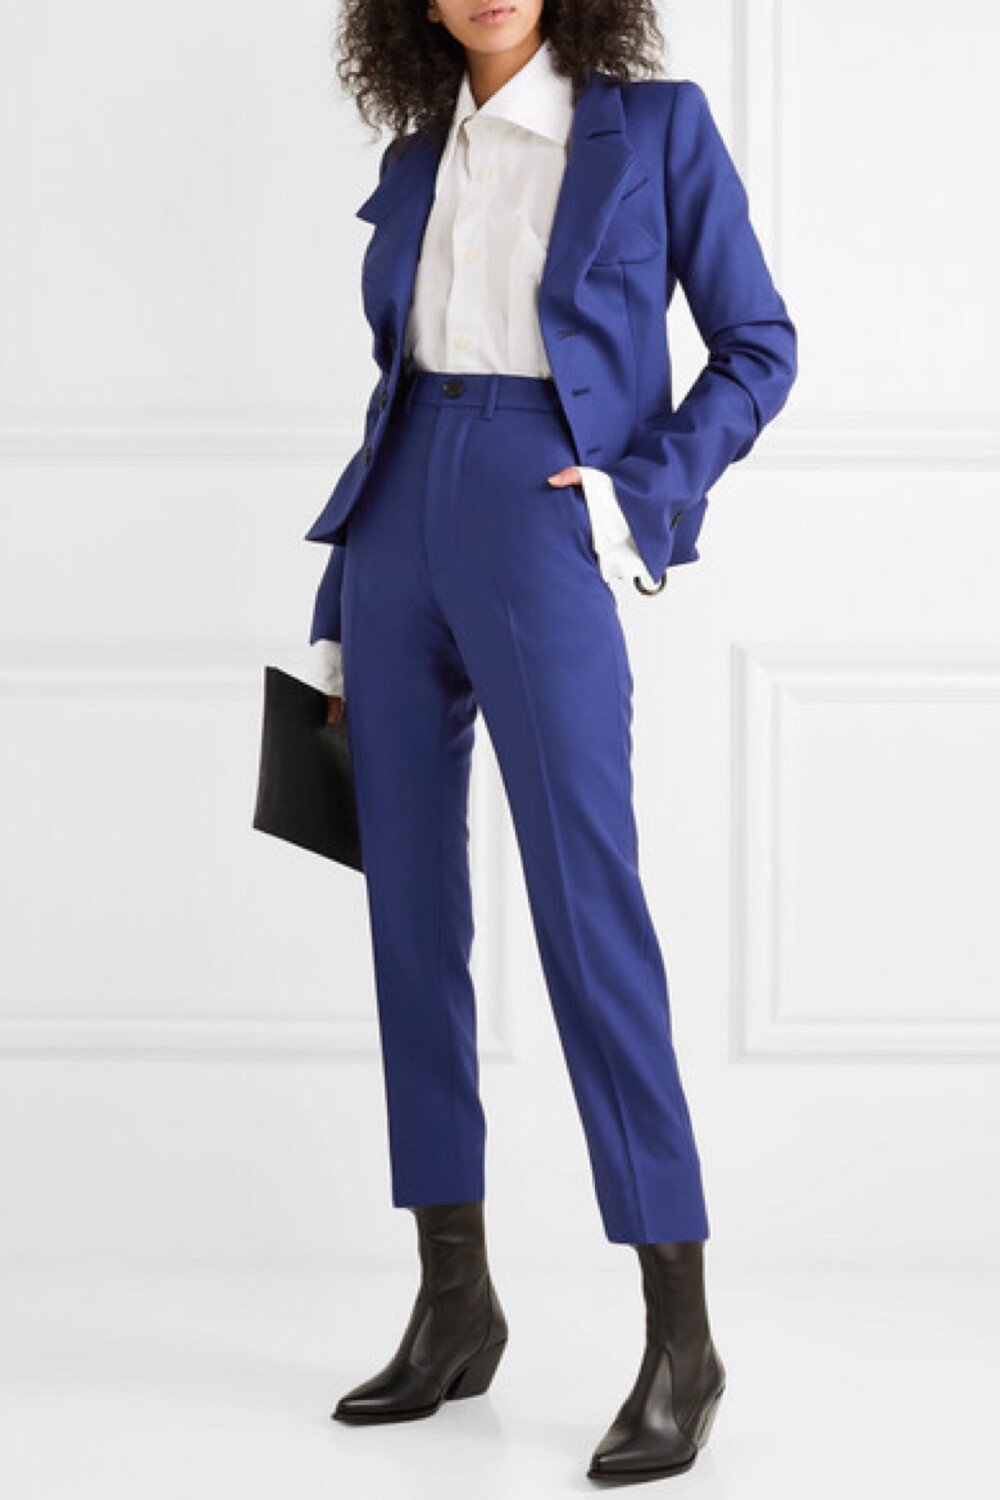 在第 30 期《PORTER》杂志中，曾为模特的英国营养学家 Rosemary Ferguson 向我们分享了她对于彩色西服套装的热爱，并宣称 Vivienne Westwood 是她最爱的设计师之一。该品牌这款修身的西装式外套以宝蓝色羊毛斜纹布于意大利精裁而成，腰部的褶皱细节格外迷人。超长双袖带有捏褶，因而长度恰及手腕。不妨与配套长裤同穿。